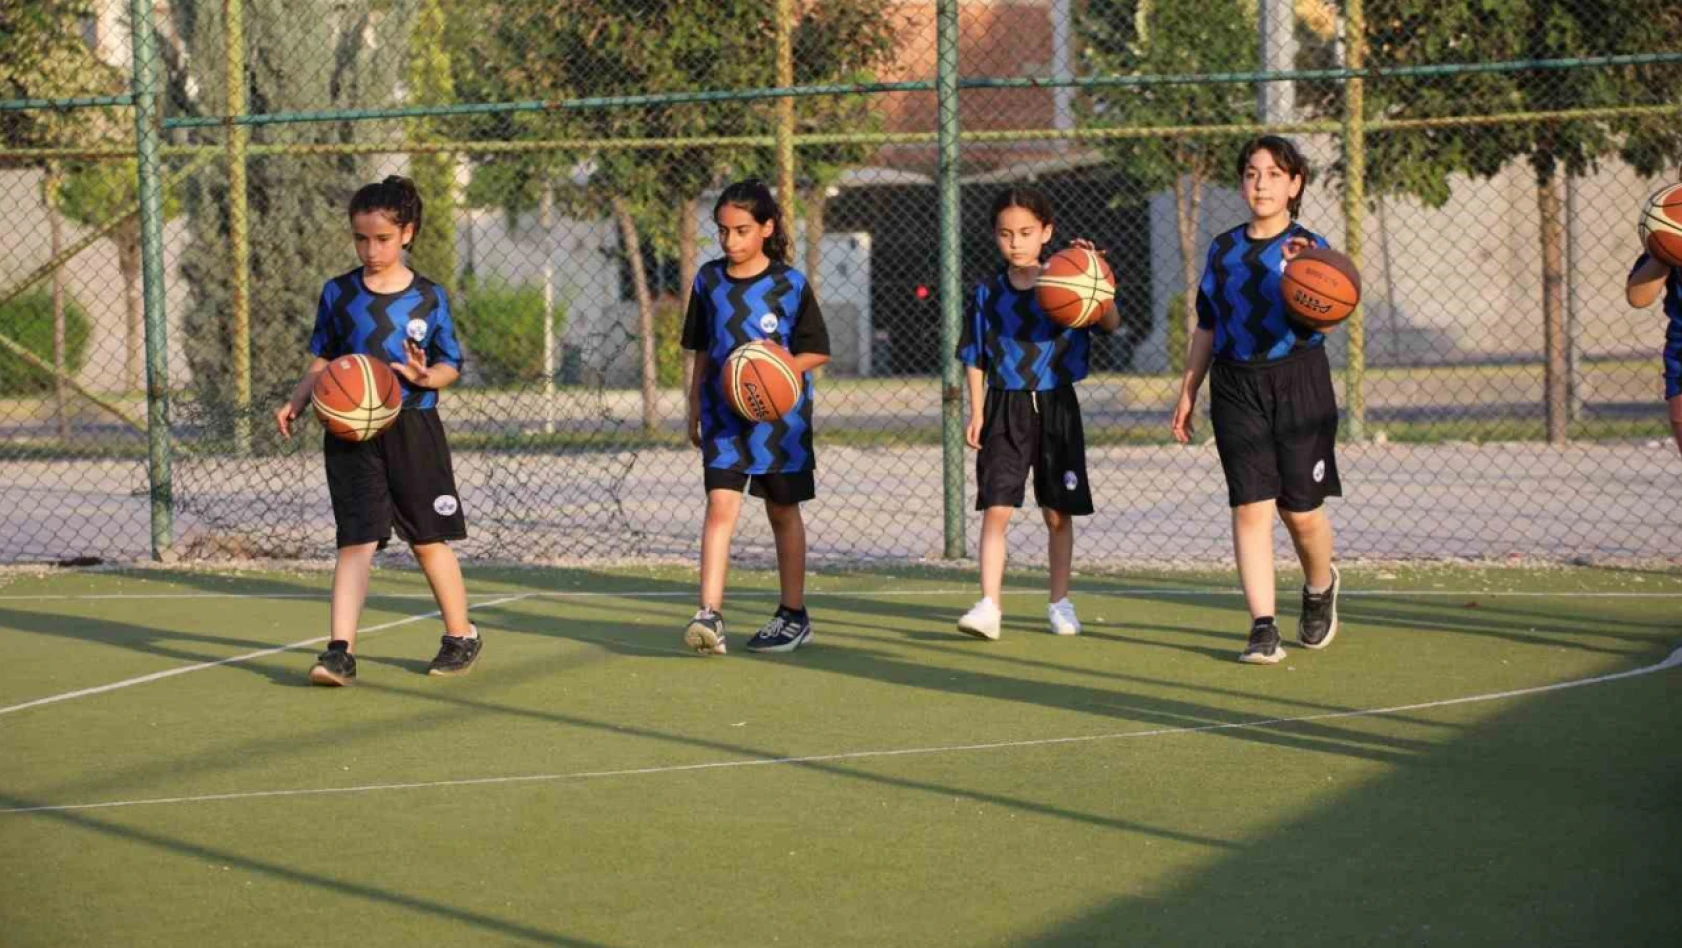 Elazığ Belediyesi ücretsiz yaz spor kursları başladı